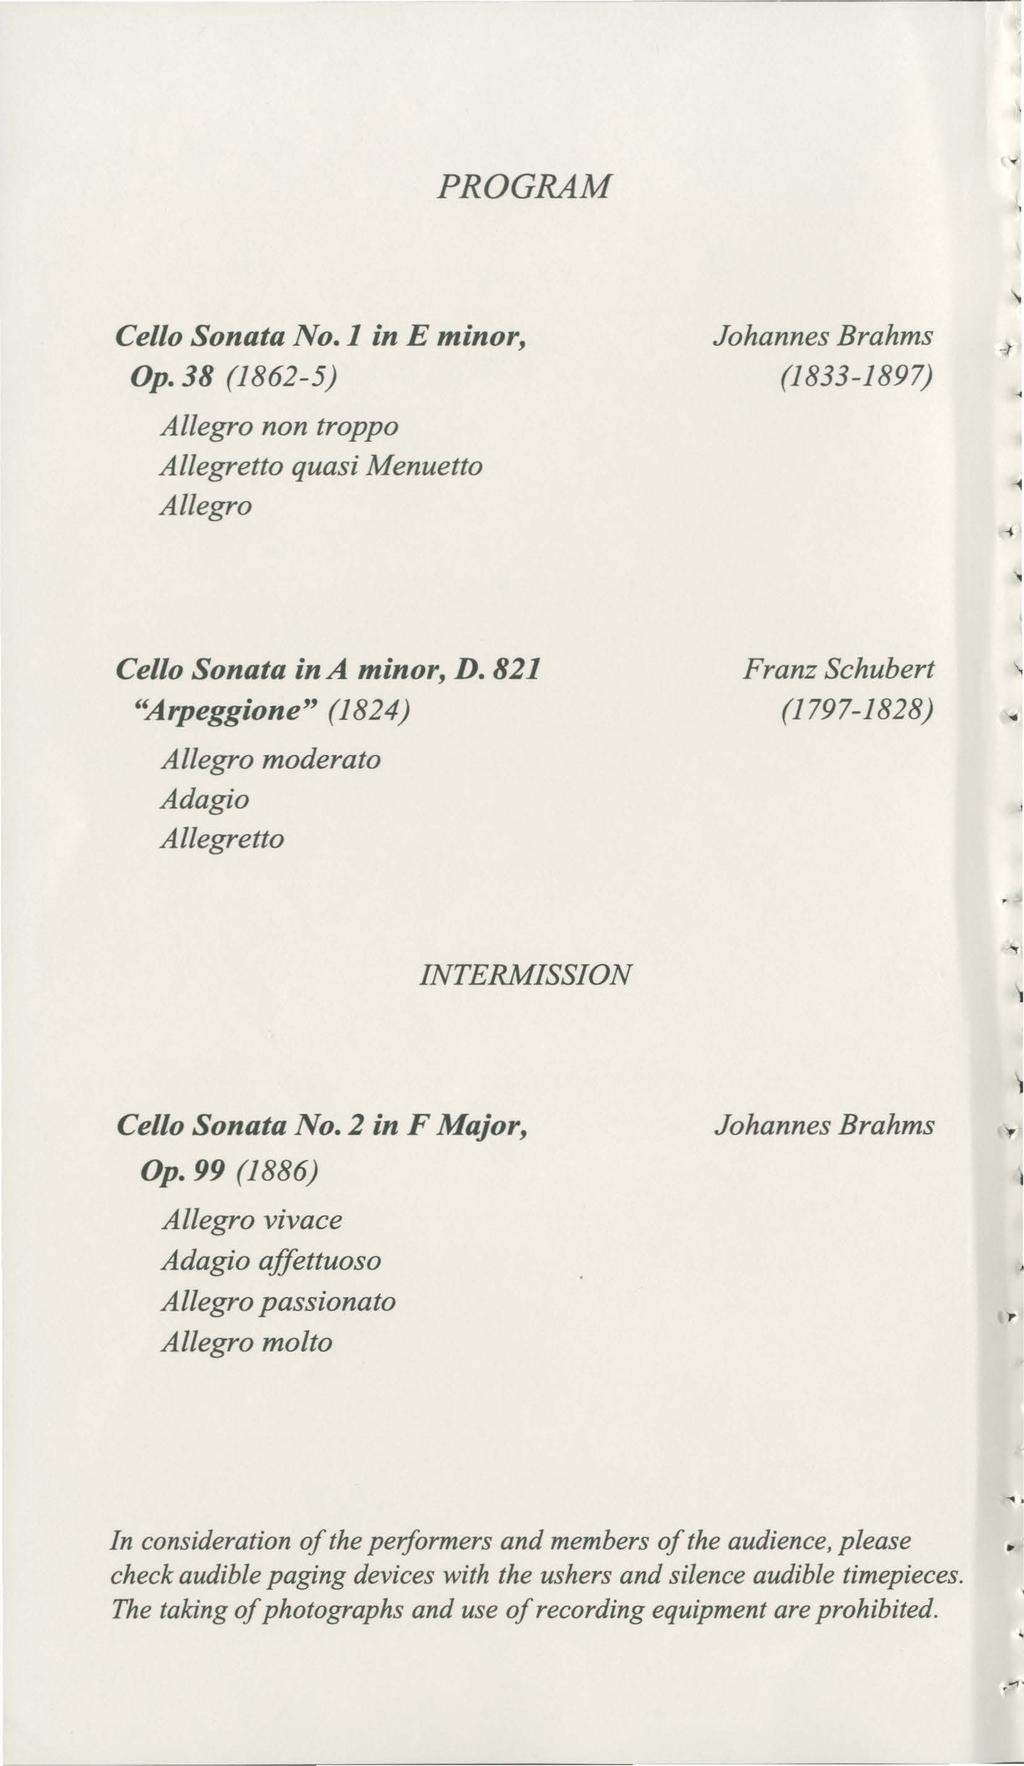 PROGRAM Cello Sonata No. J in E minor, Op. 38 (1862-5) Allegro non troppo Allegretto quasi Menuetto Allegro Johannes Brahms (1833-1897) -r 1 Cello Sonata in A minor, D.